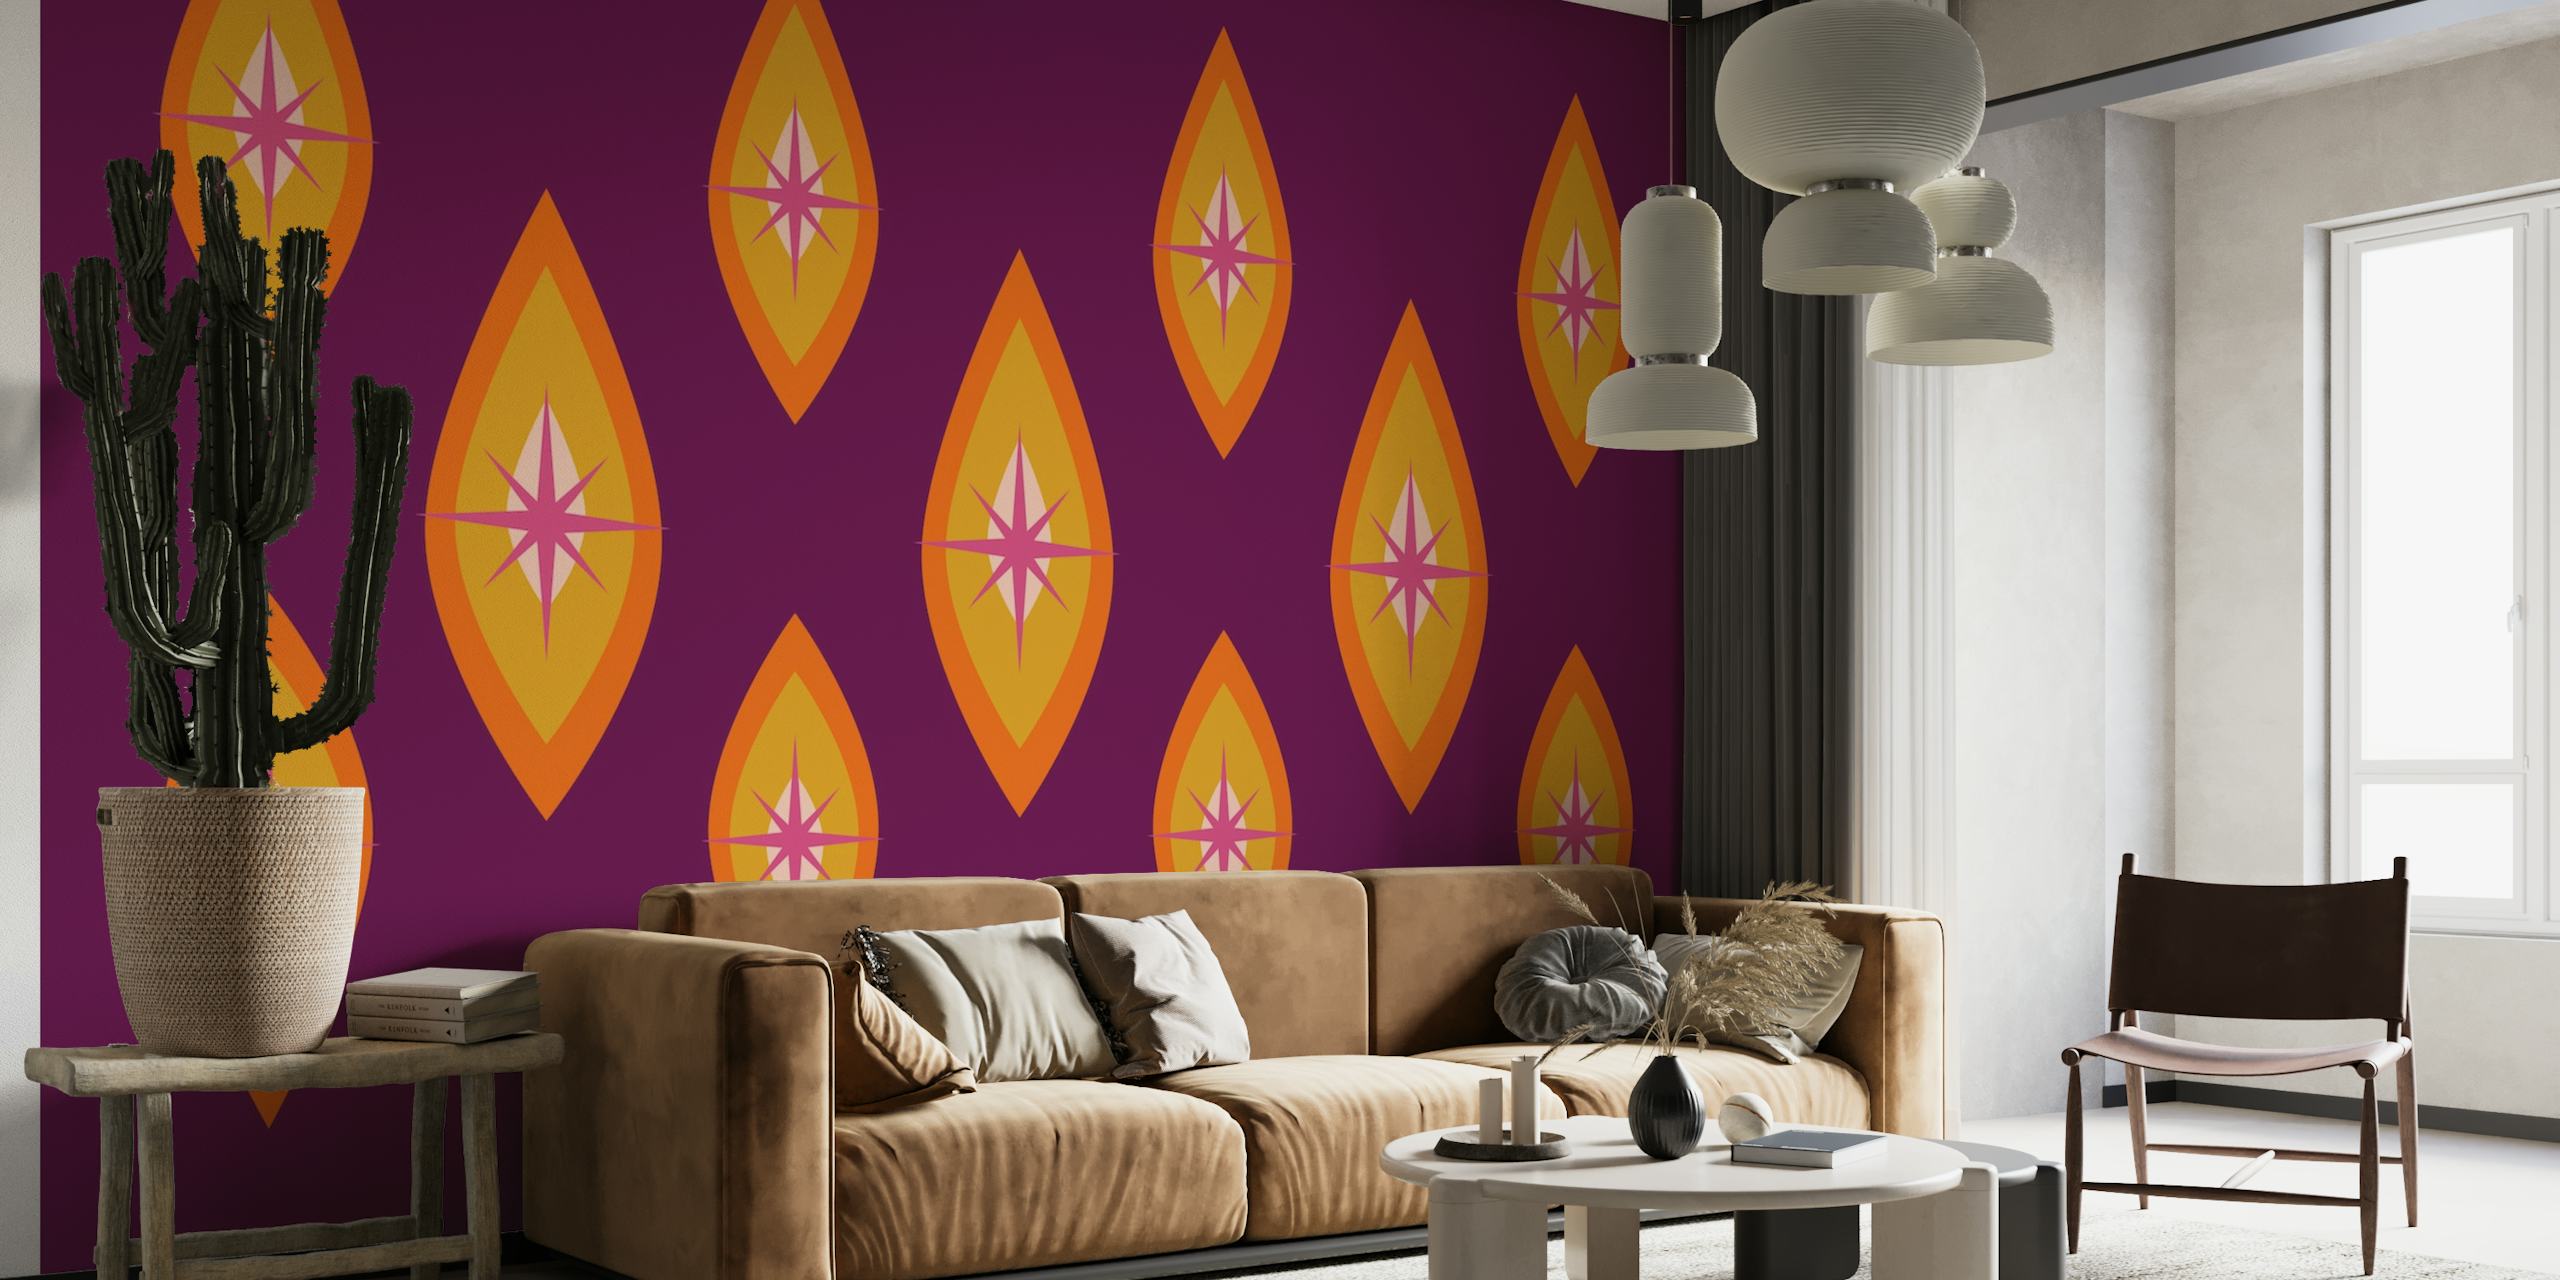 Papier peint mural 'Seventies Neon' d'inspiration rétro avec des formes géométriques sur fond violet